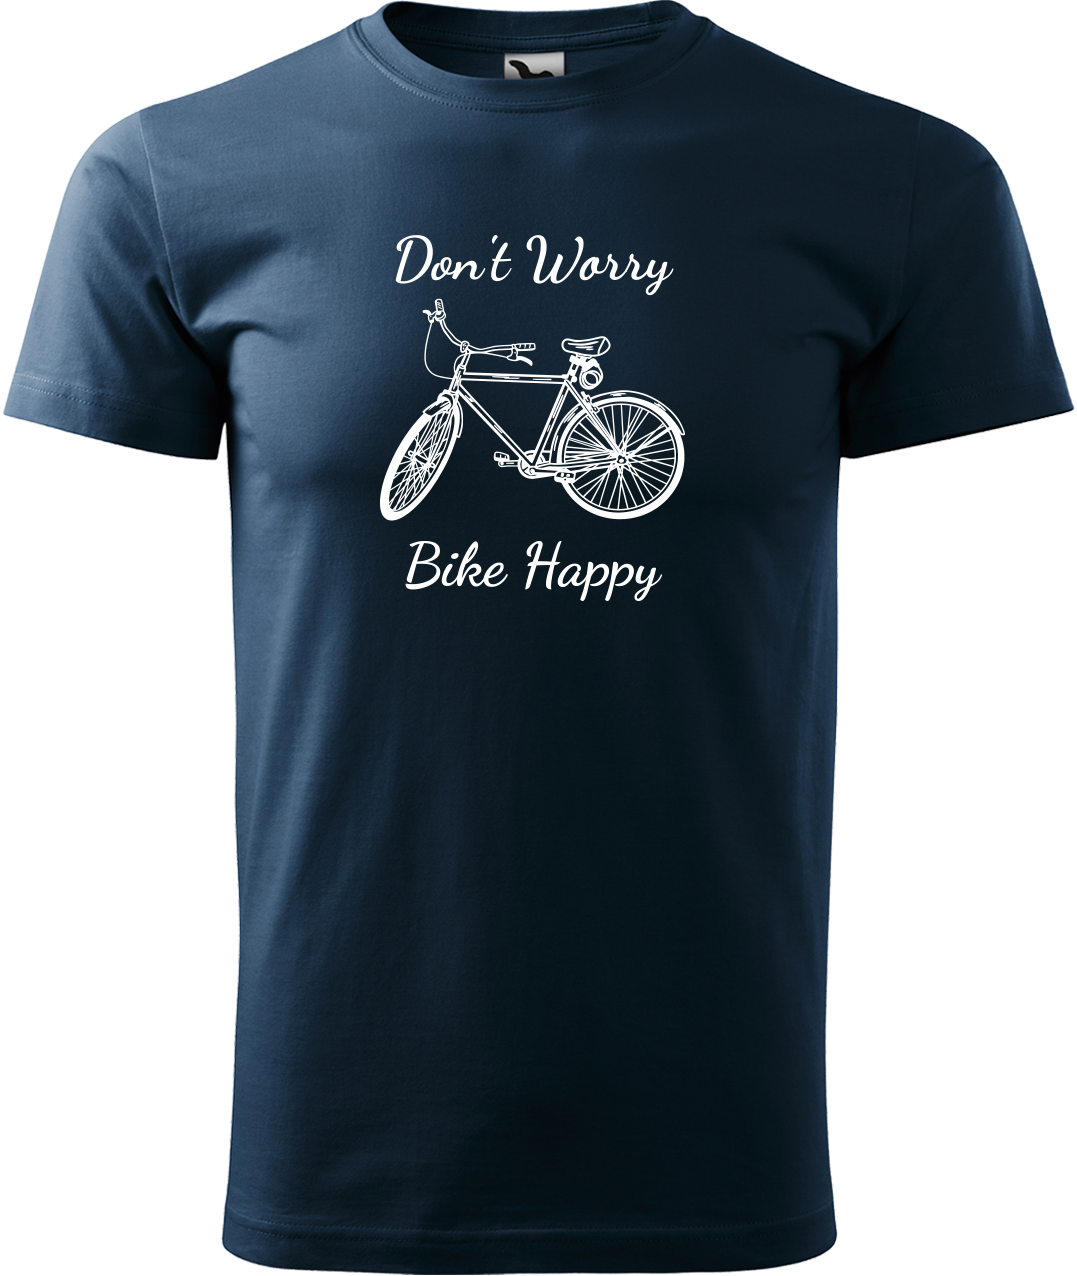 Pánské tričko s kolem - Don't Worry Bike Happy Velikost: XL, Barva: Námořní modrá (02)